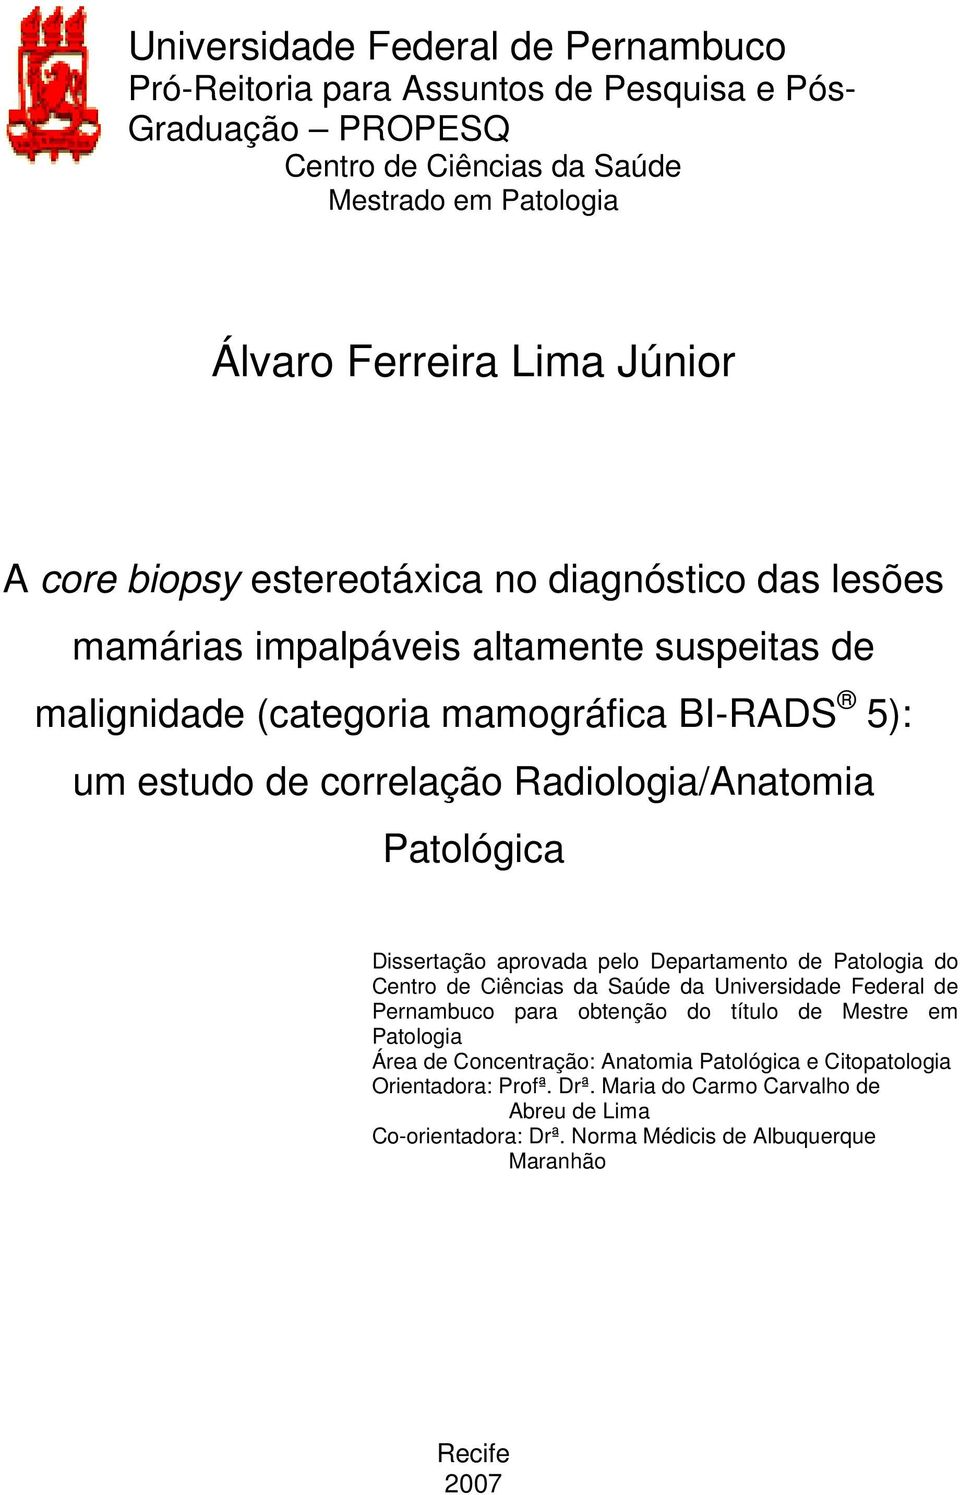 Patológica Dissertação aprovada pelo Departamento de Patologia do Centro de Ciências da Saúde da Universidade Federal de Pernambuco para obtenção do título de Mestre em Patologia Área